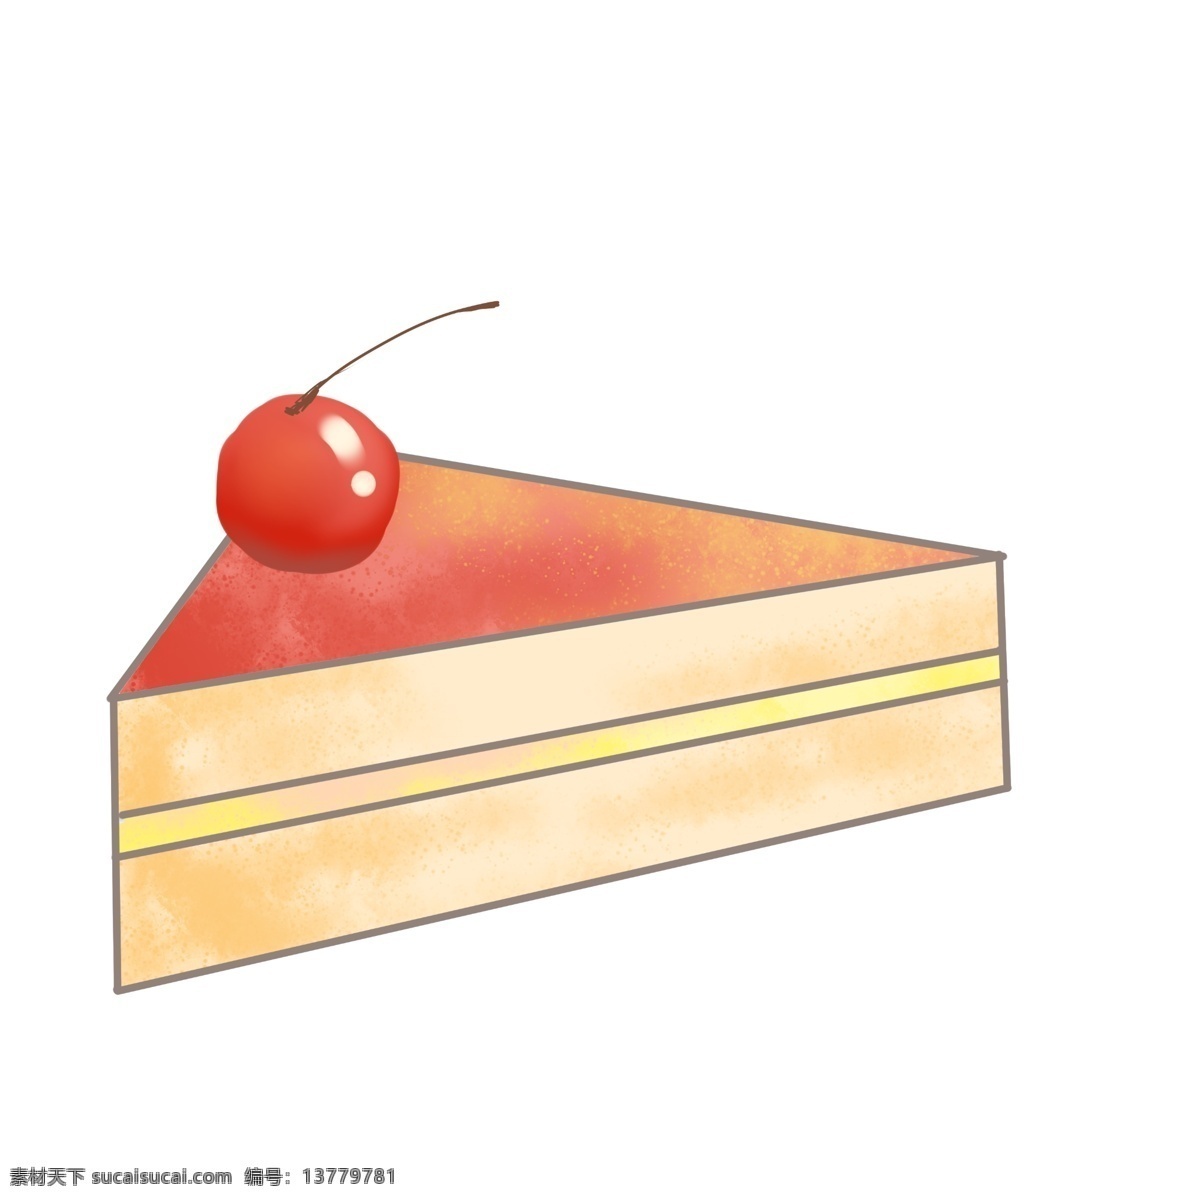 草莓 樱桃 蛋糕 插画 粉色草莓蛋糕 红色的樱桃 创意美食插画 水果奶油蛋糕 美味的糕点 夹心的蛋糕